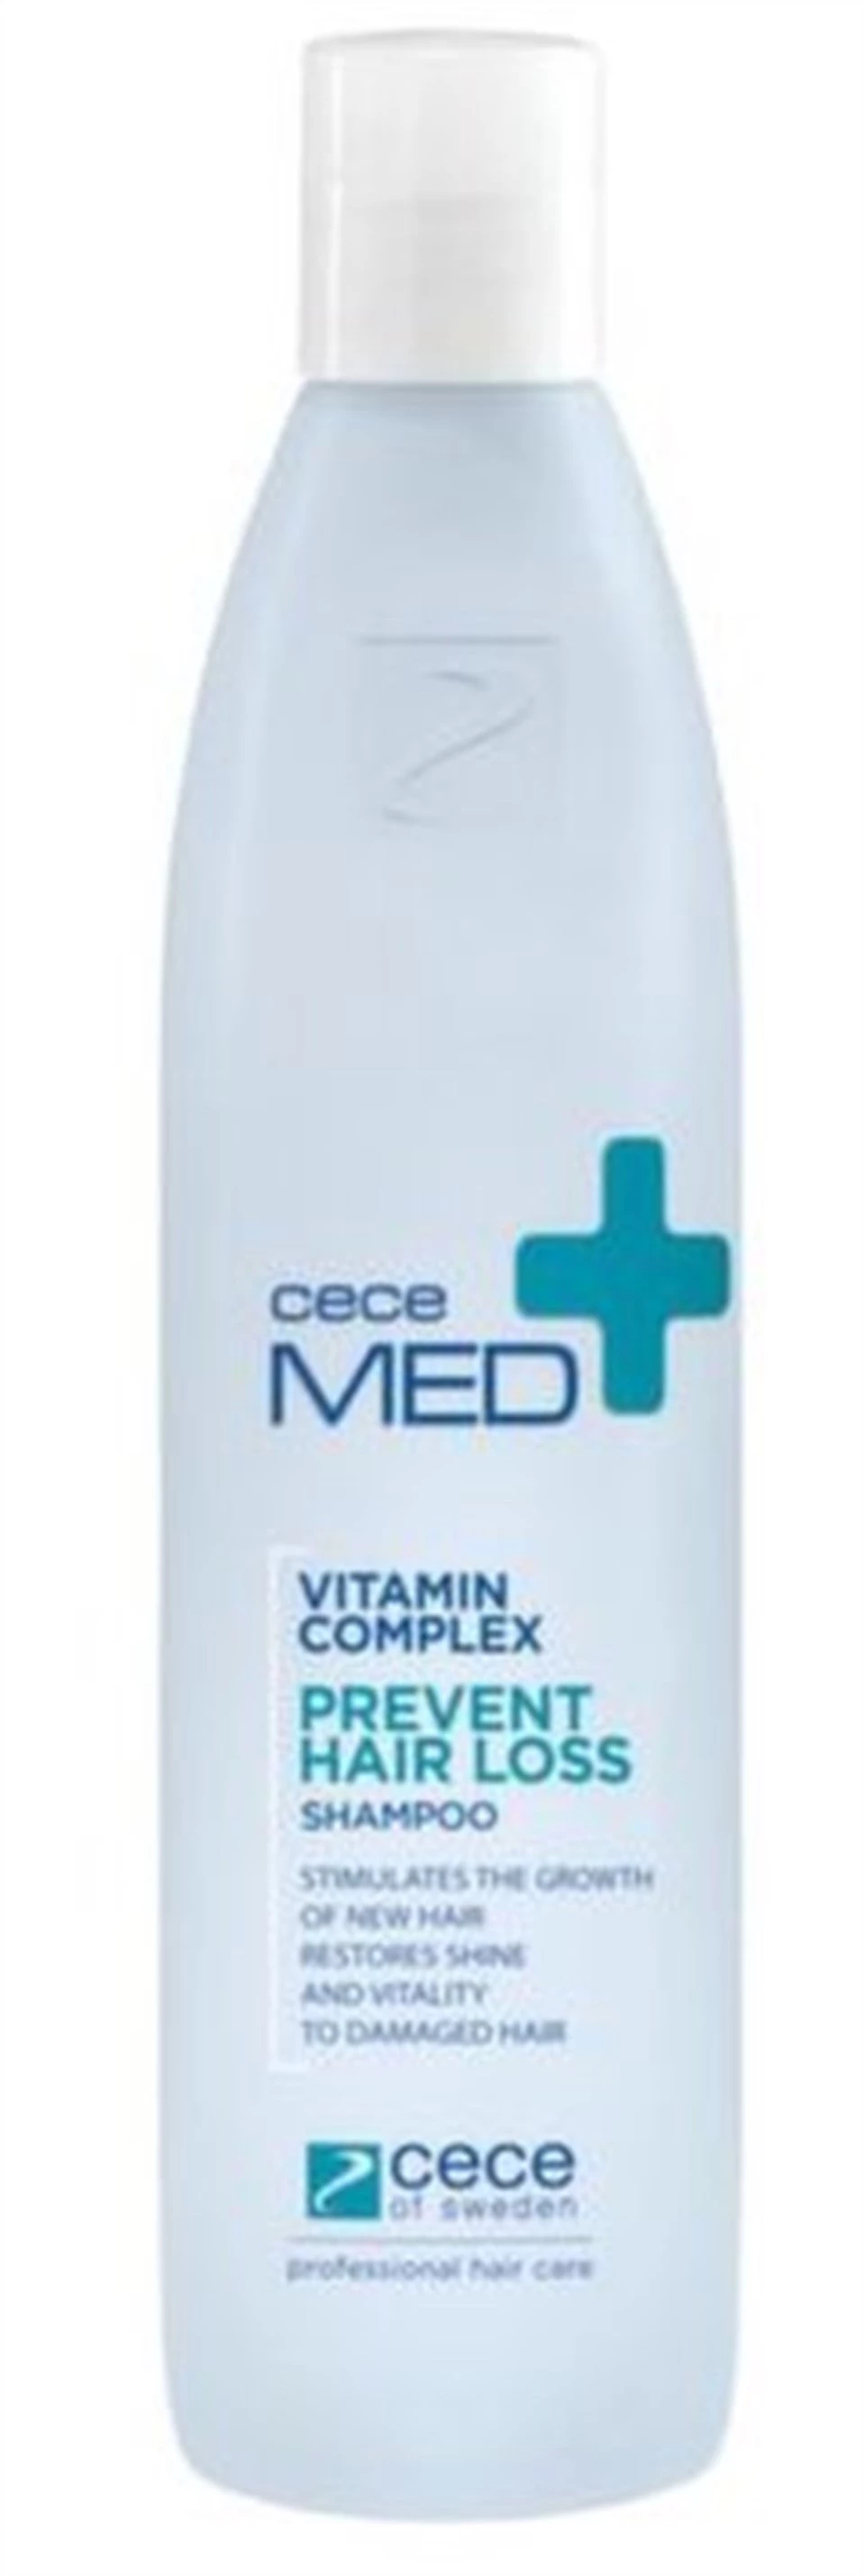 DermaPlus Md CeceMed Prevent Hair Loss Shampoo 300ml